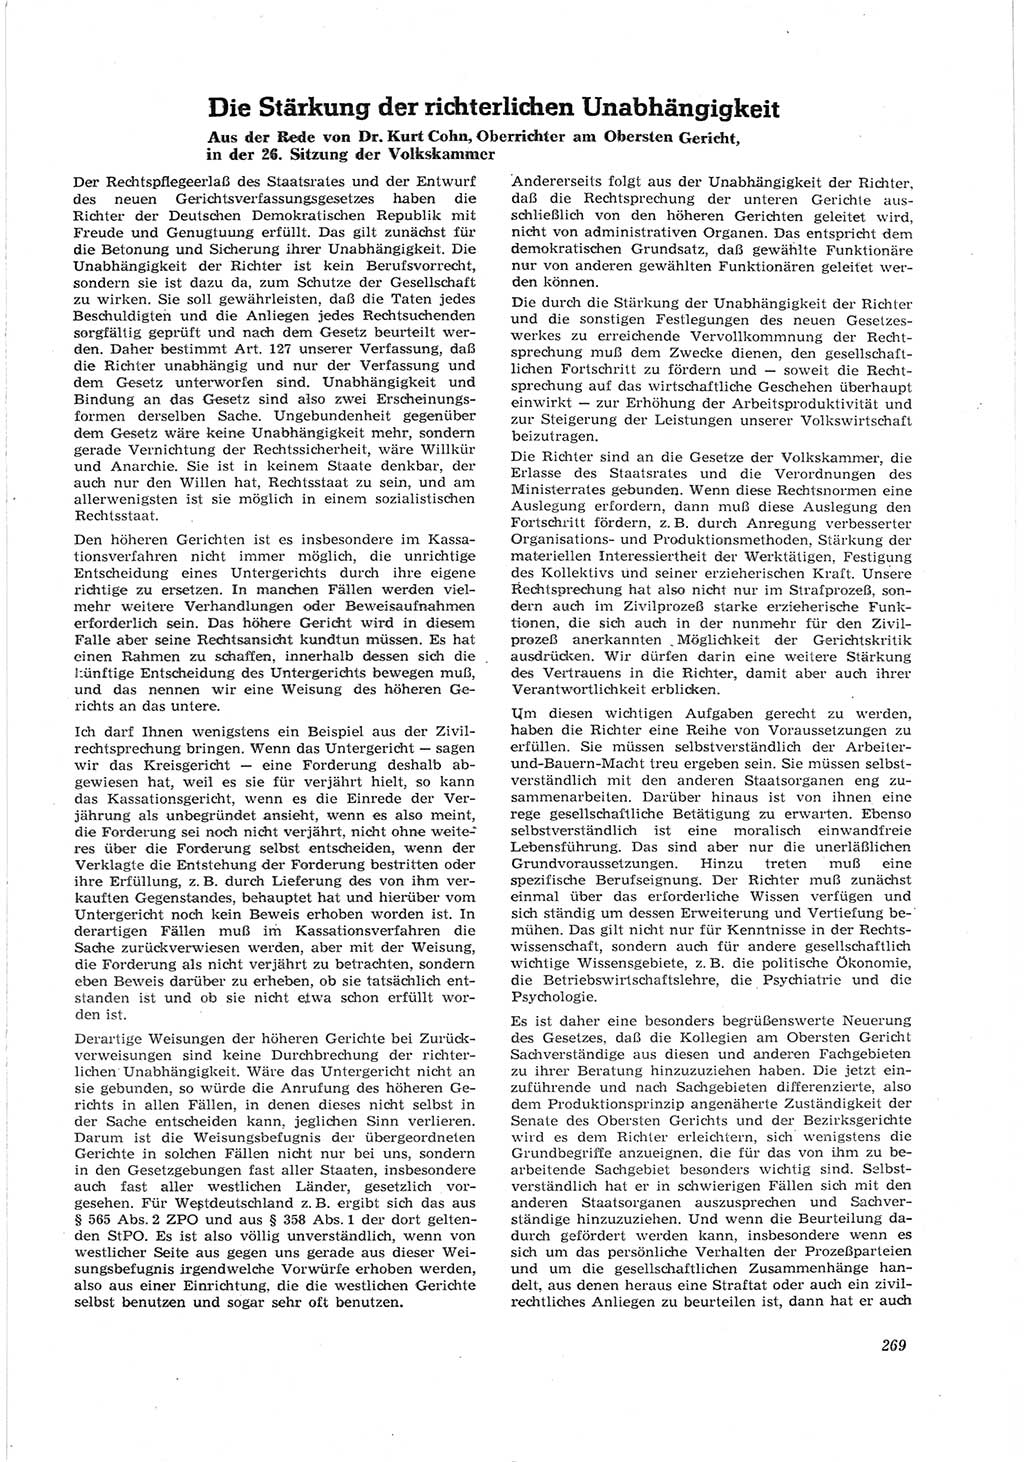 Neue Justiz (NJ), Zeitschrift für Recht und Rechtswissenschaft [Deutsche Demokratische Republik (DDR)], 17. Jahrgang 1963, Seite 269 (NJ DDR 1963, S. 269)